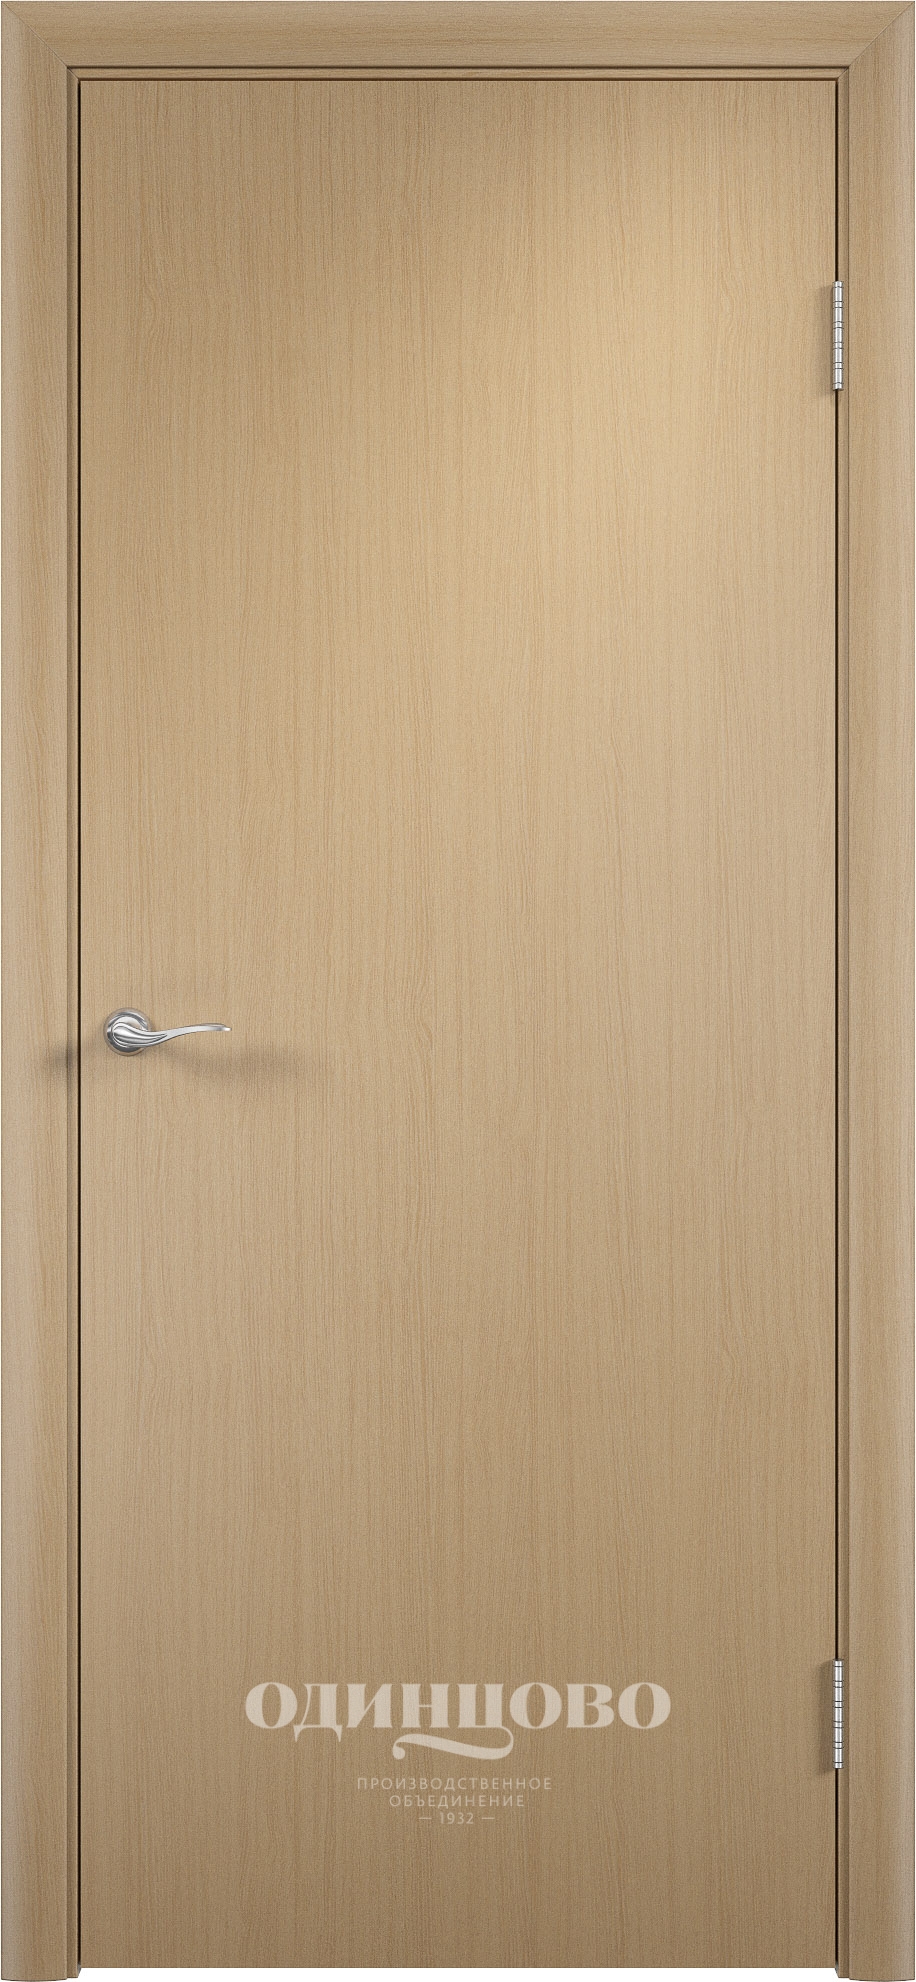 Модель дверей ДПГ, ламинированные. Компания Верда - Стильный набор разработок - отличные фото.